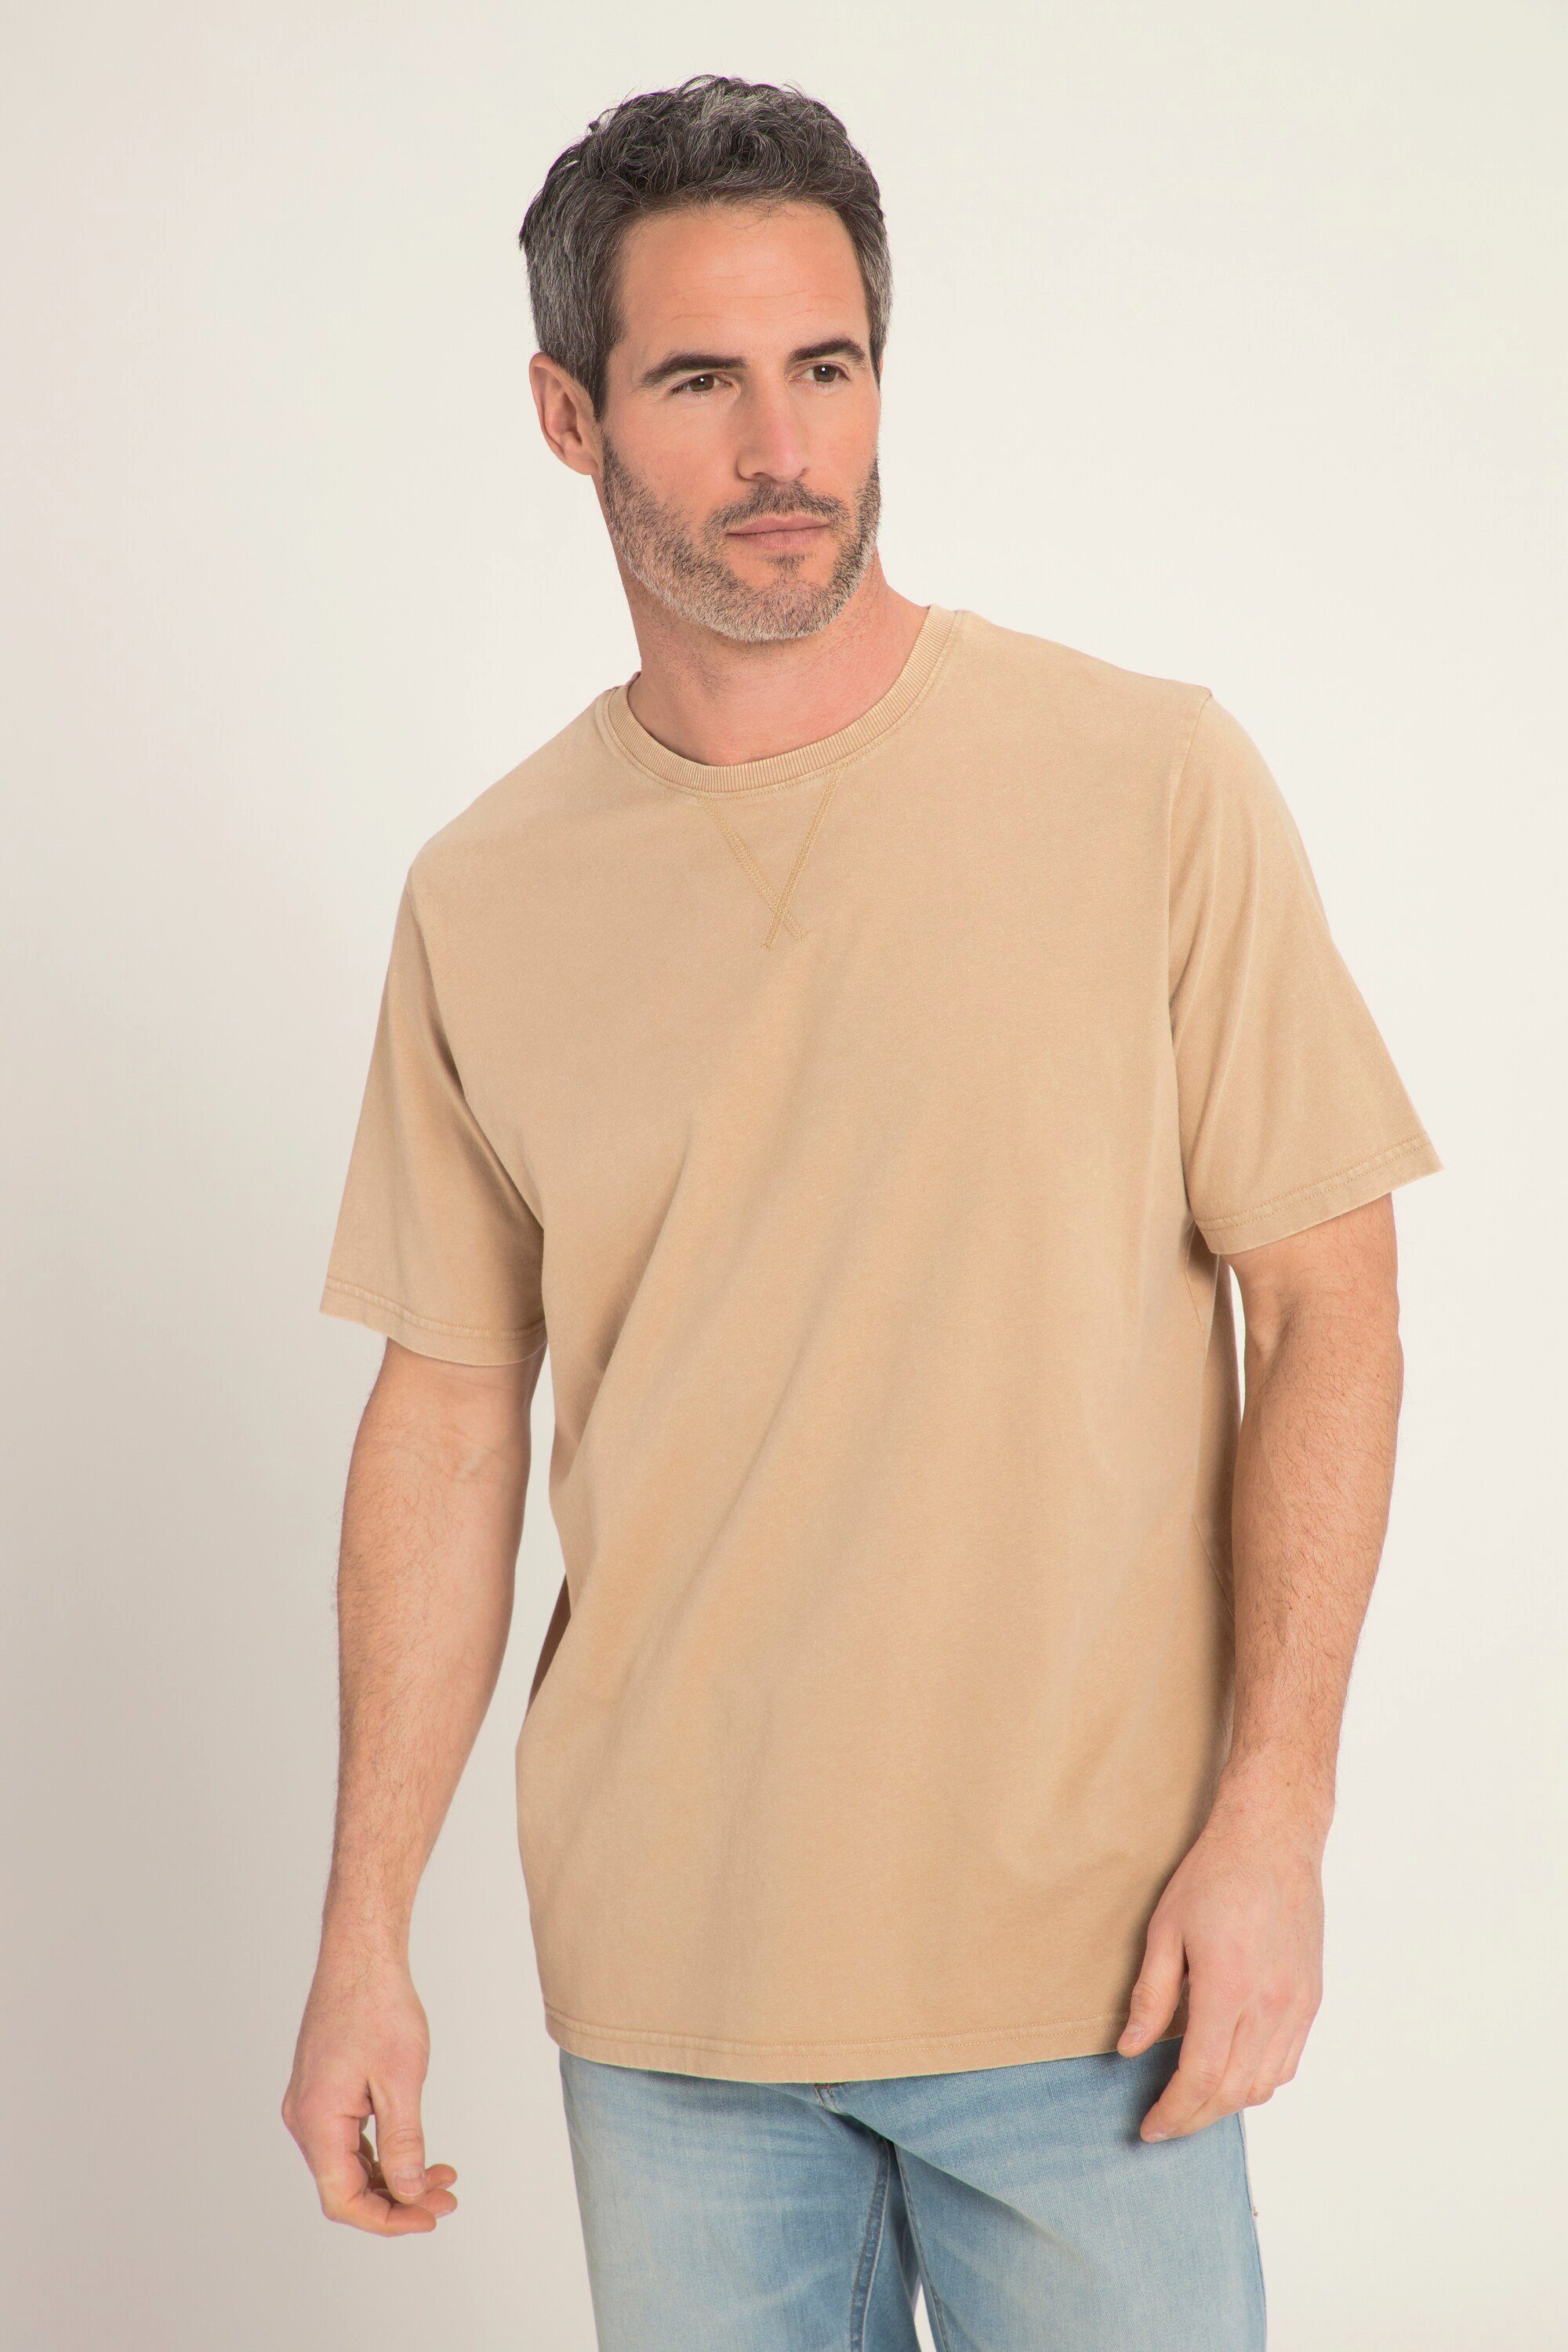 sandgrau Halbarm T-Shirt washed acid Rundhals T-Shirt JP1880